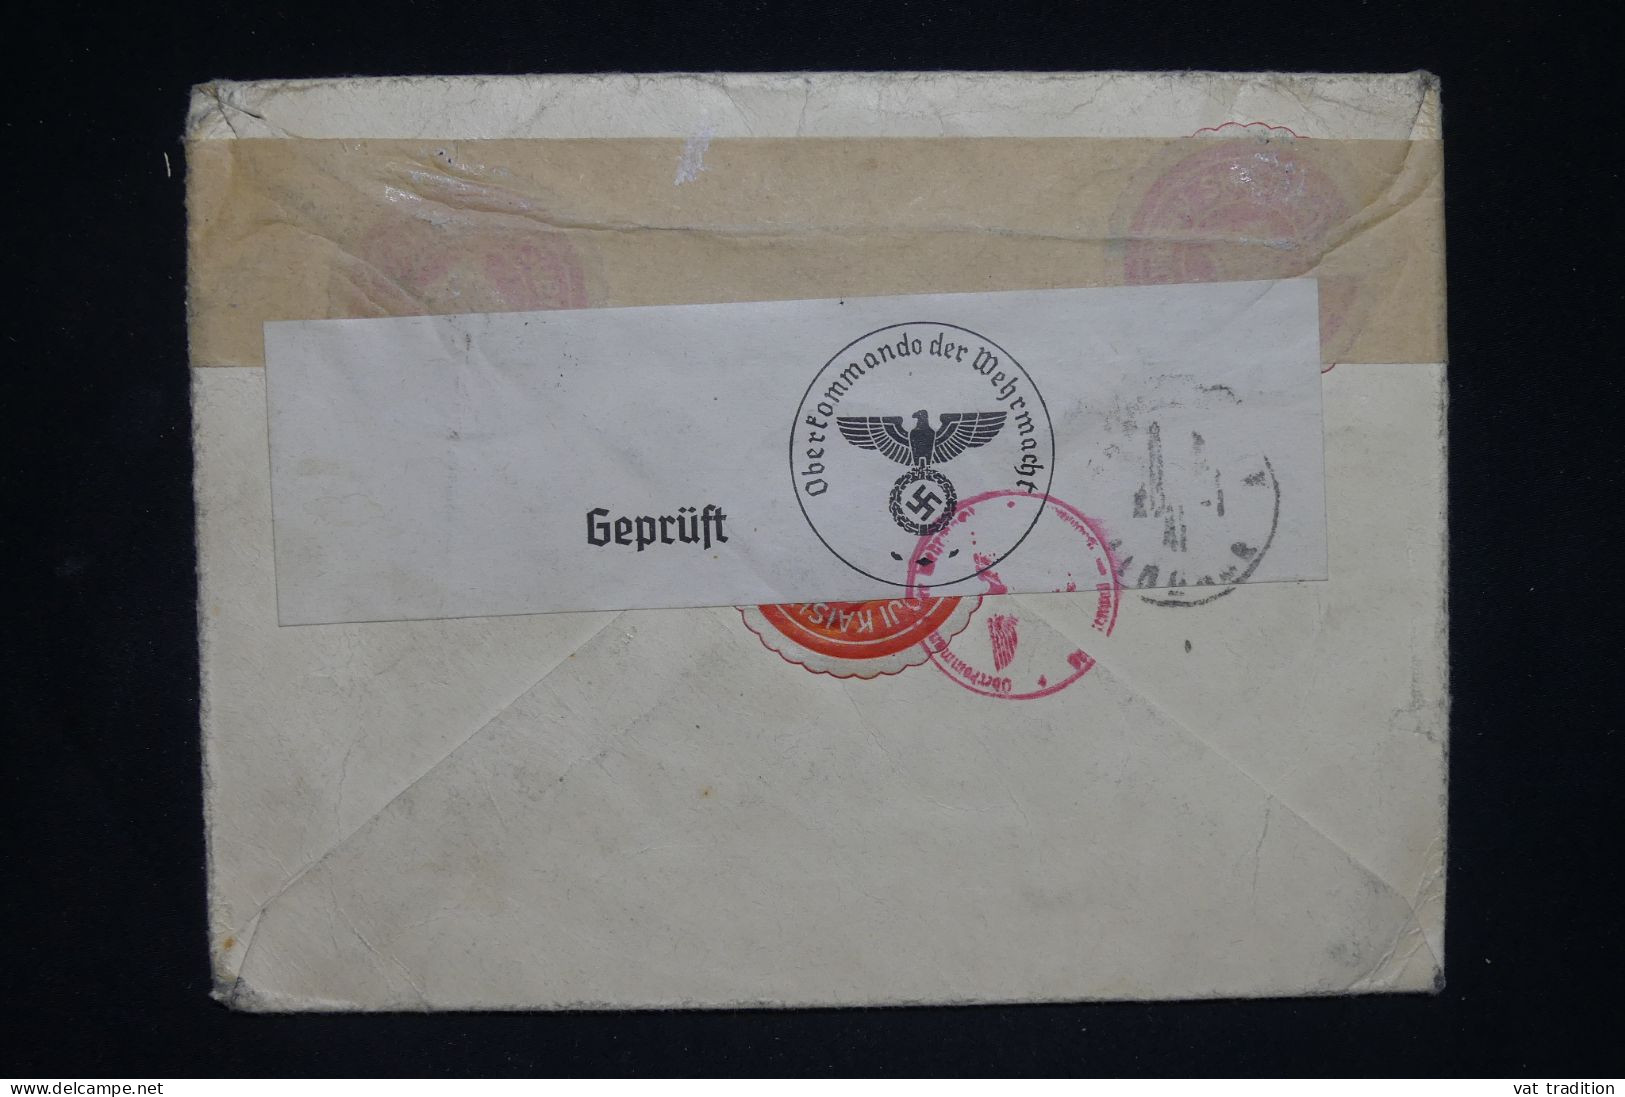 JAPON - Enveloppe Commerciale De Dairen Pour Paris En 1941 Avec Contrôle Allemand - L 150111 - Briefe U. Dokumente